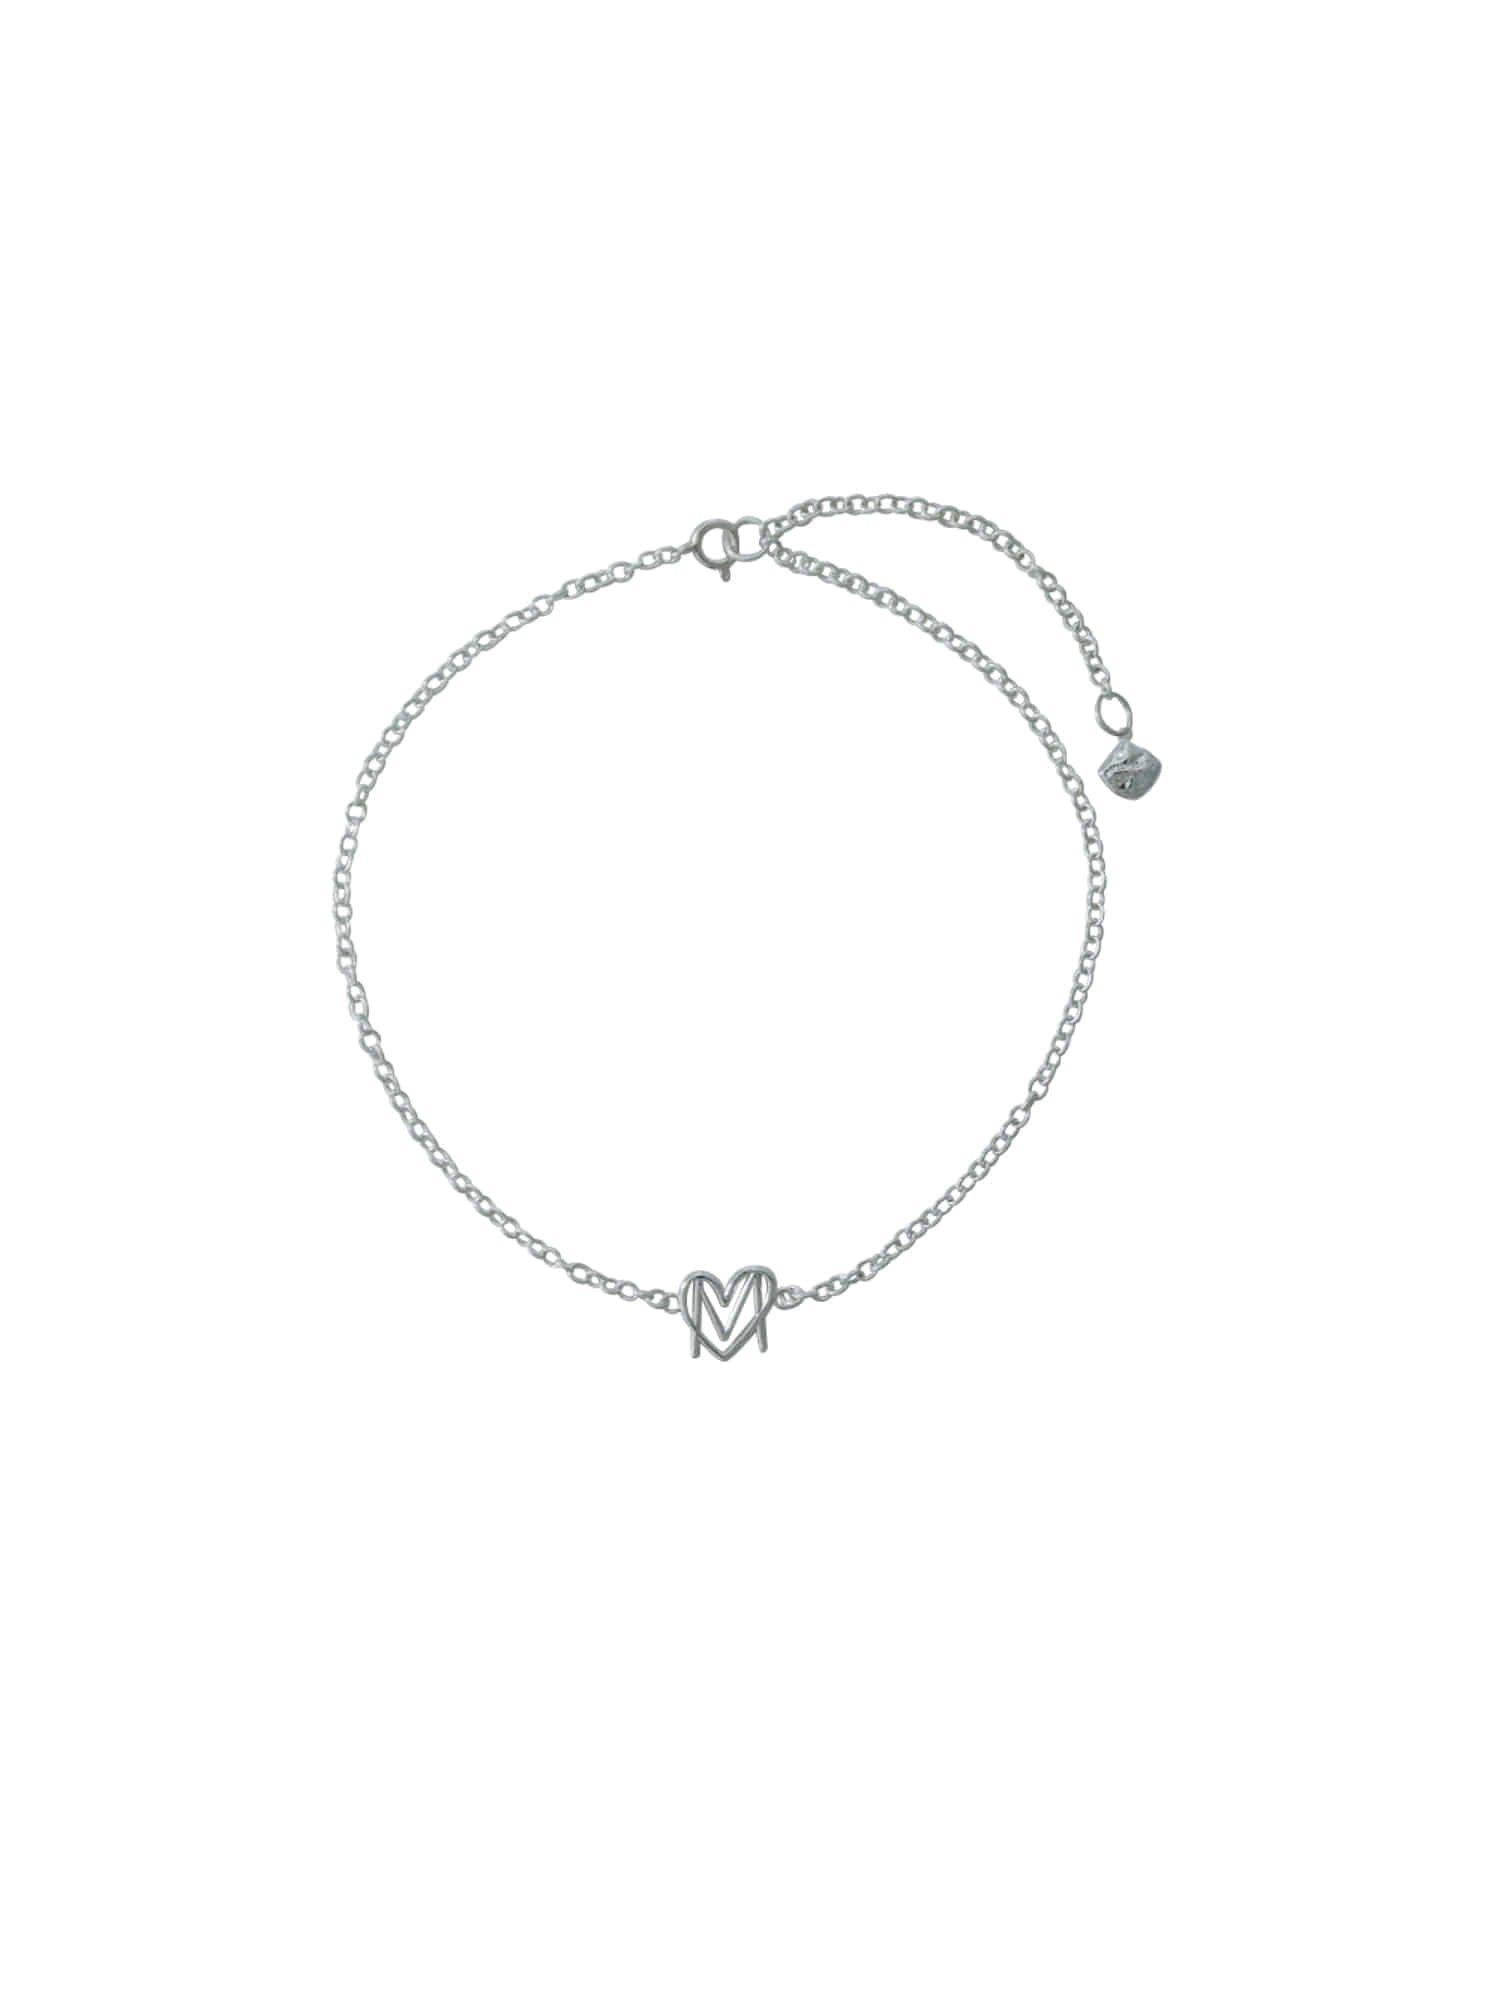 Love Symbol Necklace - Silver